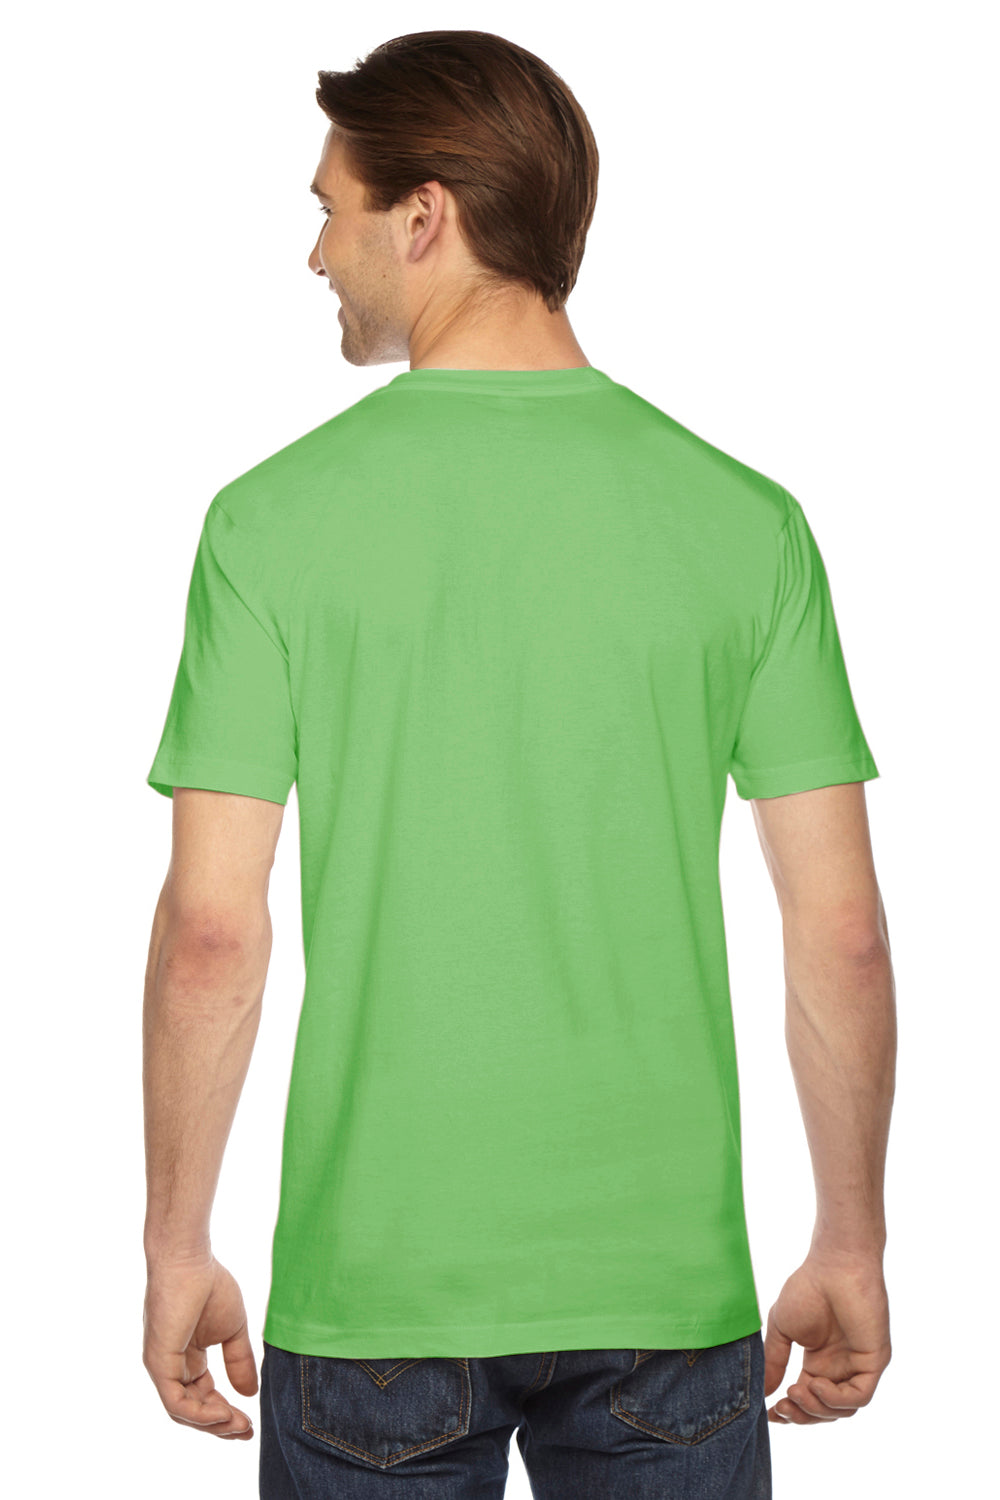 American Apparel 2001W Mens Fine Jersey Short Sleeve Crewneck T-Shirt Grass Green Back